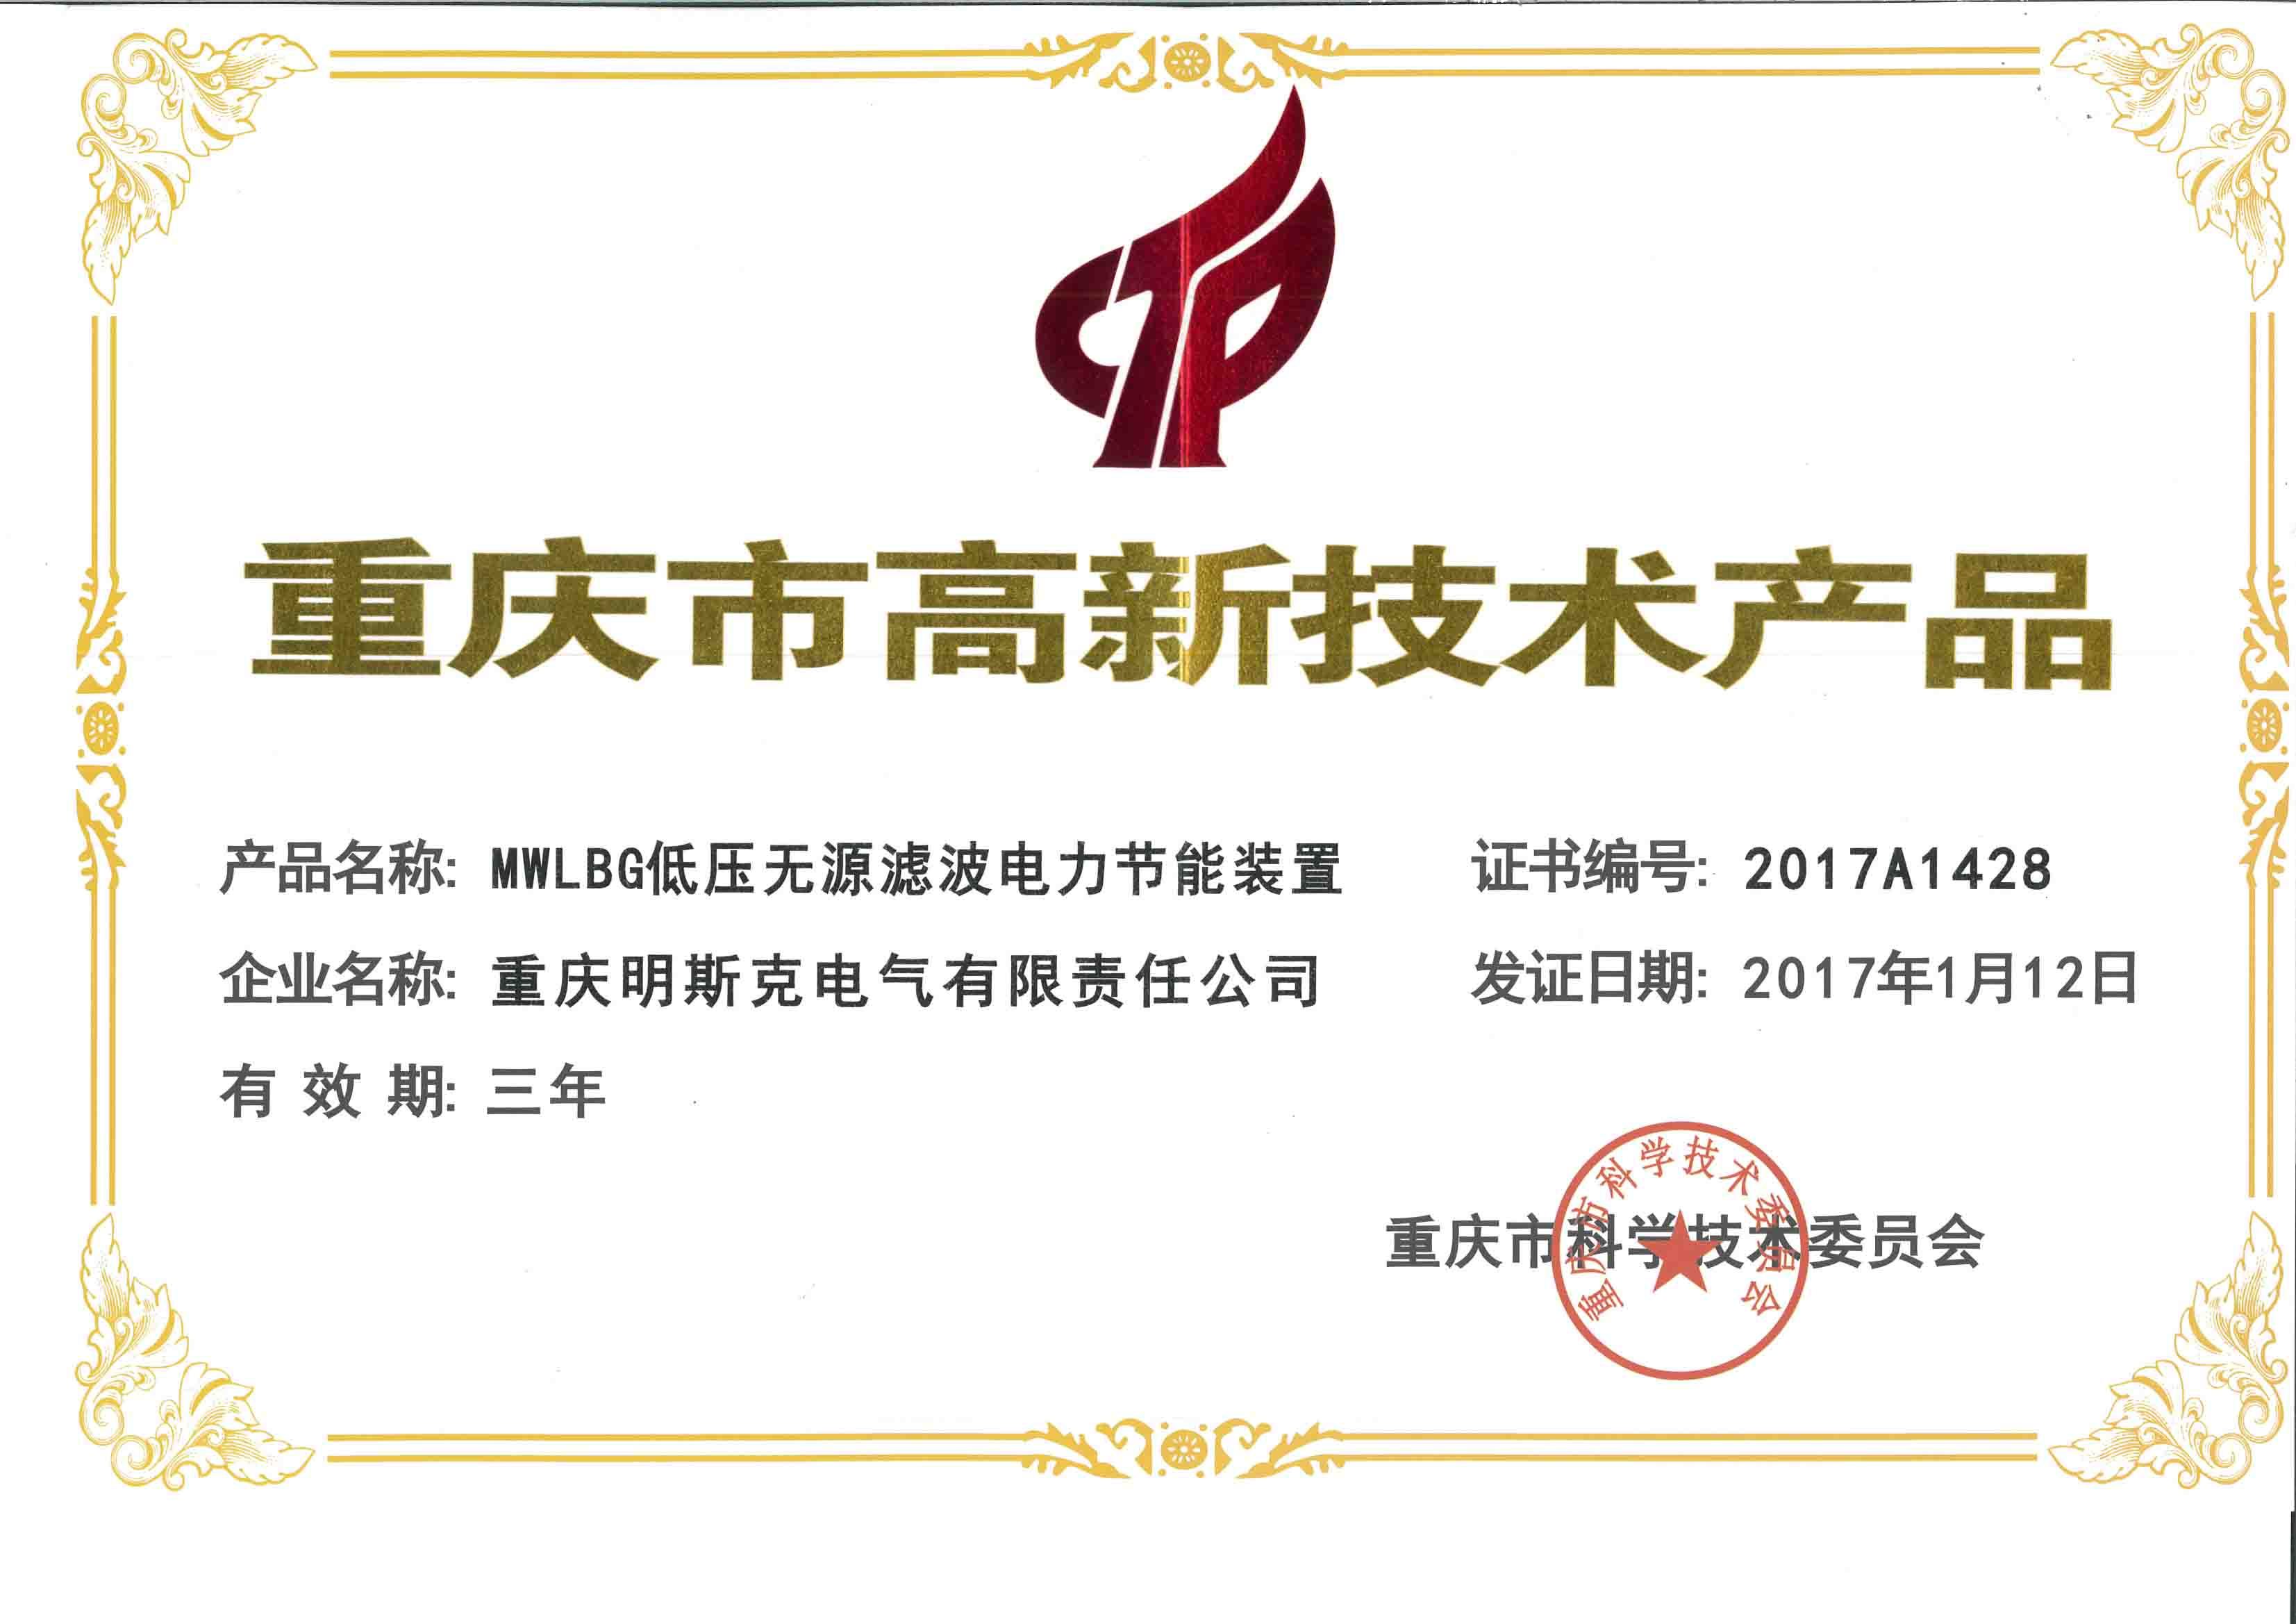 重庆高企申报——恭喜重庆明斯克电气有限公司成功申报高新技术企业